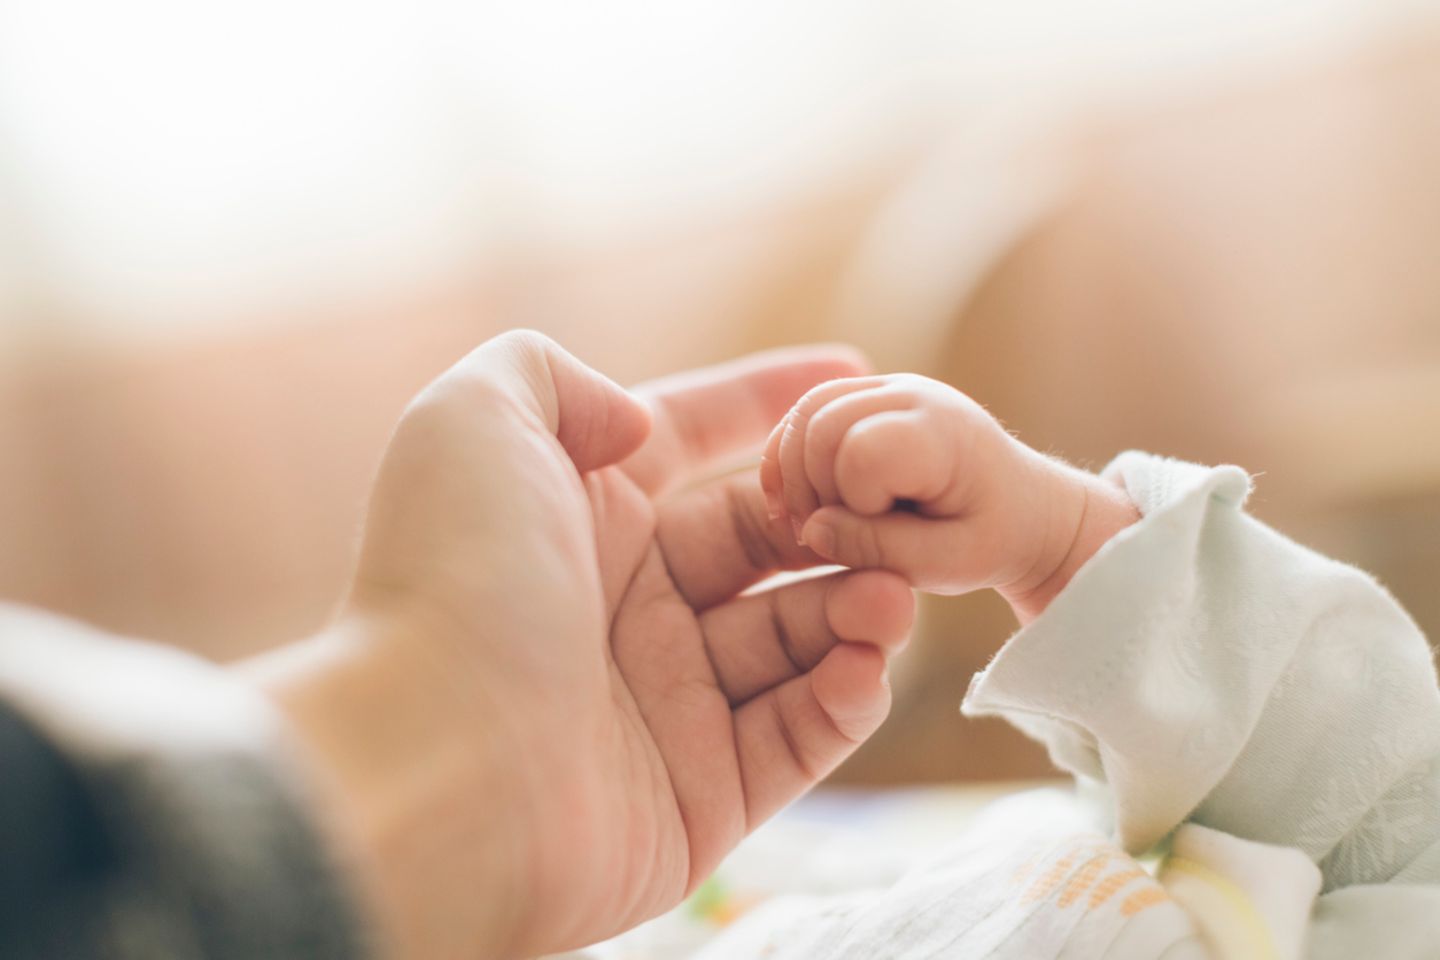 Reflexe Baby: Neugeborenes umklammert den Finger seiner Mutter